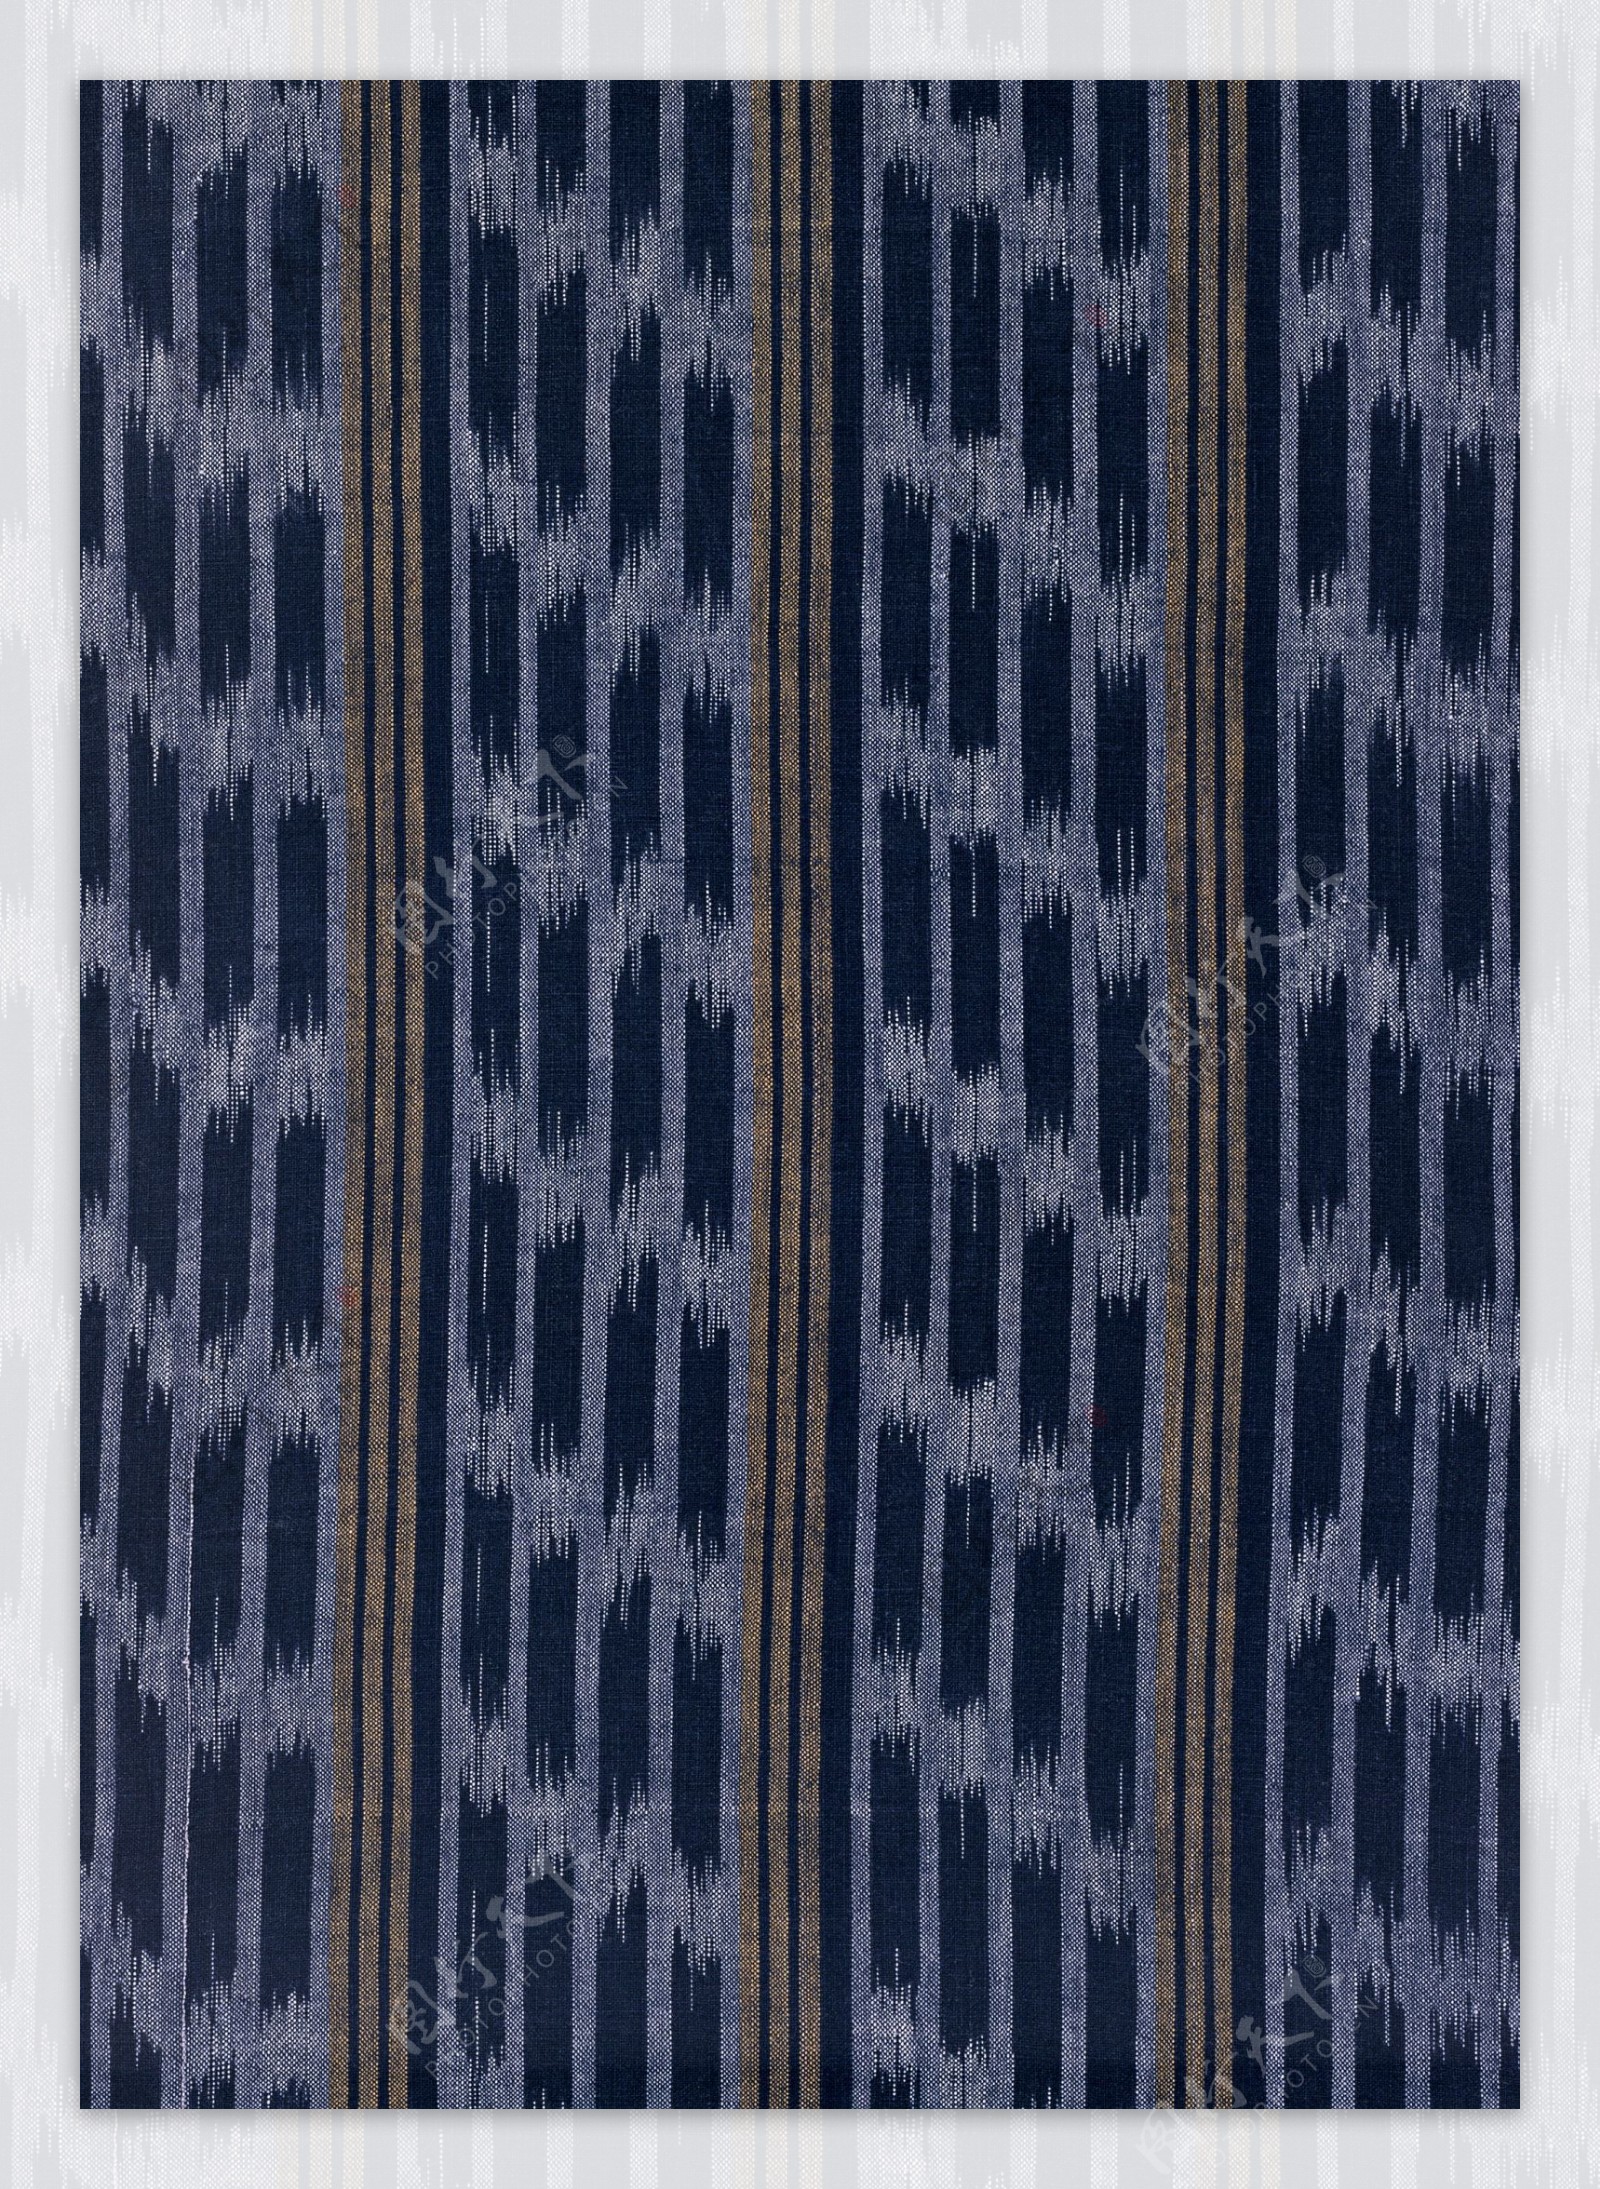 日式织布格纹